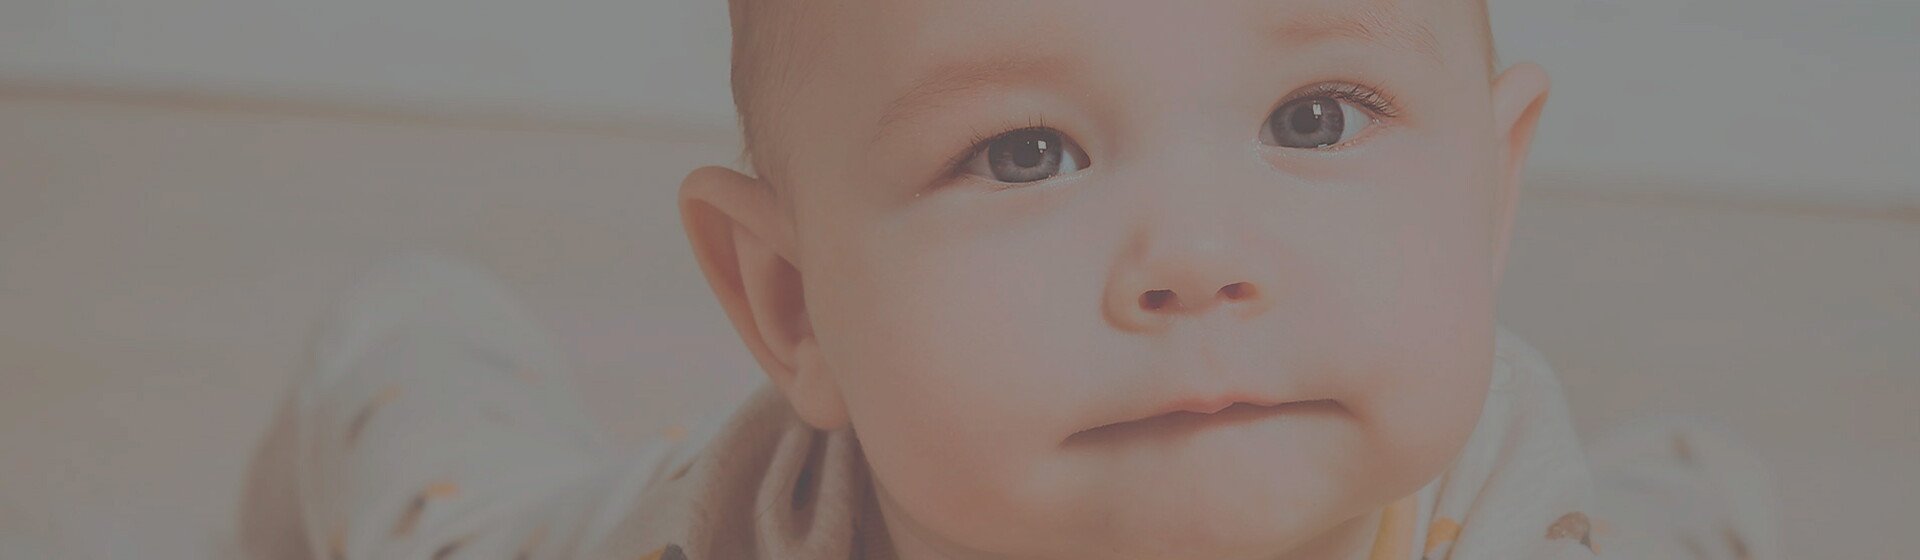 imagem de bebê com olhos claros para falar sobre calculadora de cor de olhos do bebê e evolução da cor de olhos do bebê